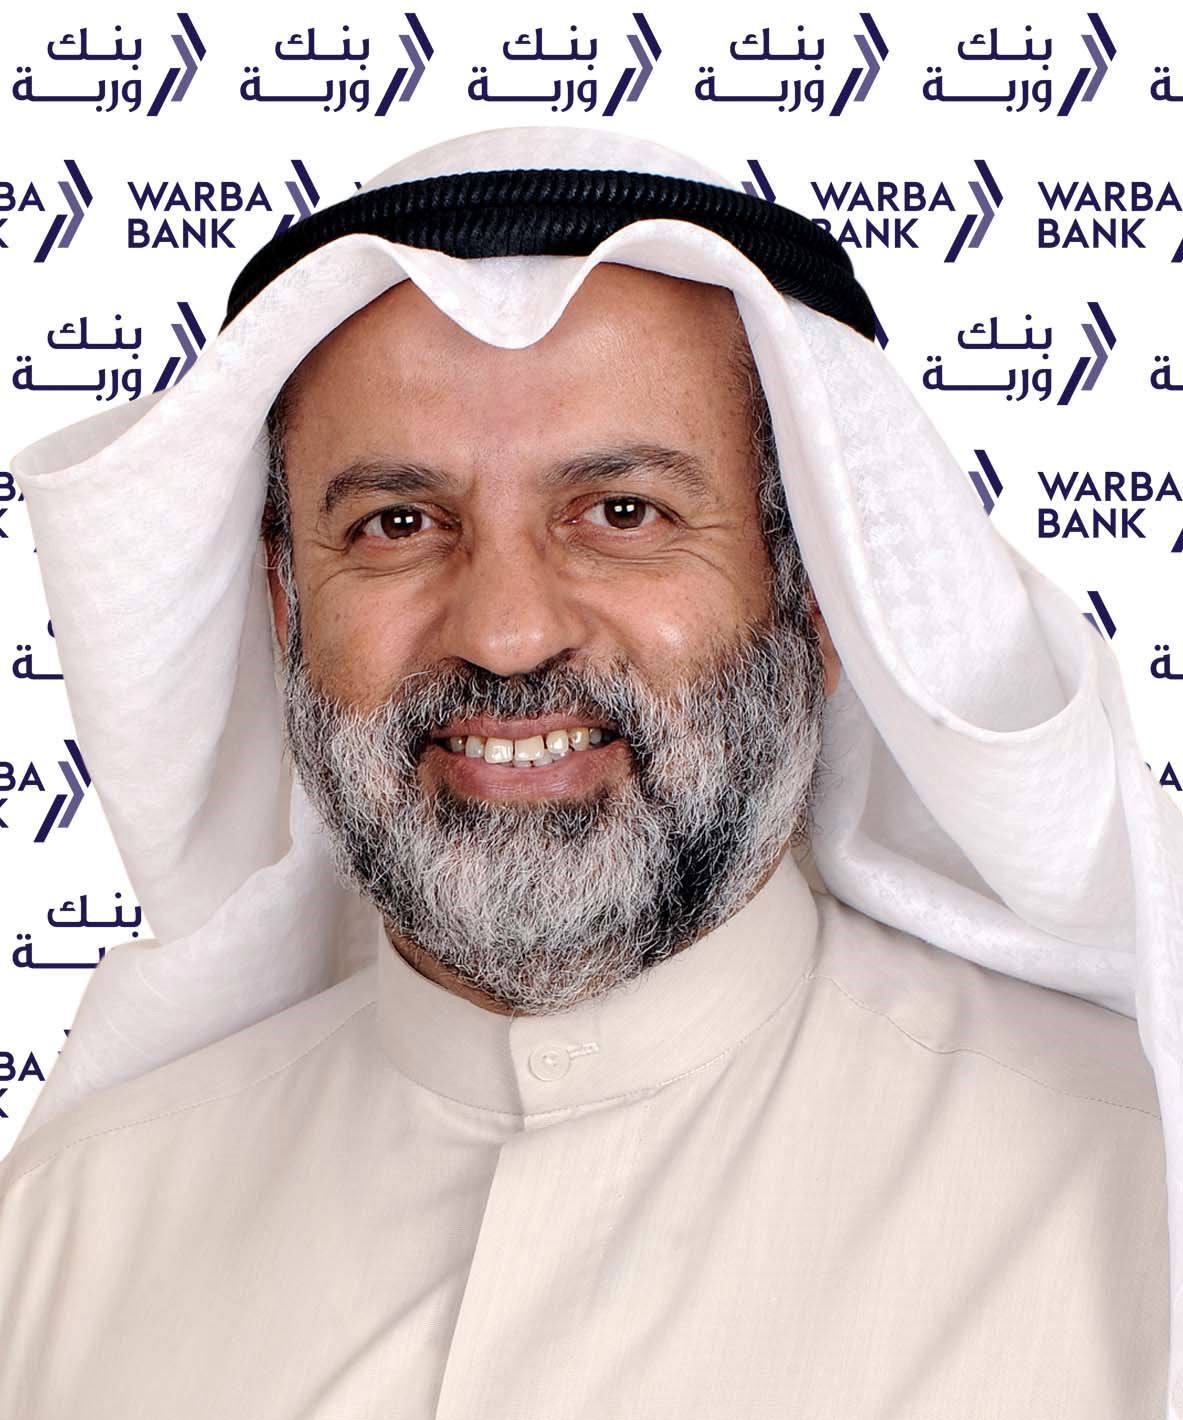 السيد عبد الوهاب عبد الله الحوطي، رئيس مجلس إدارة بنك وربة